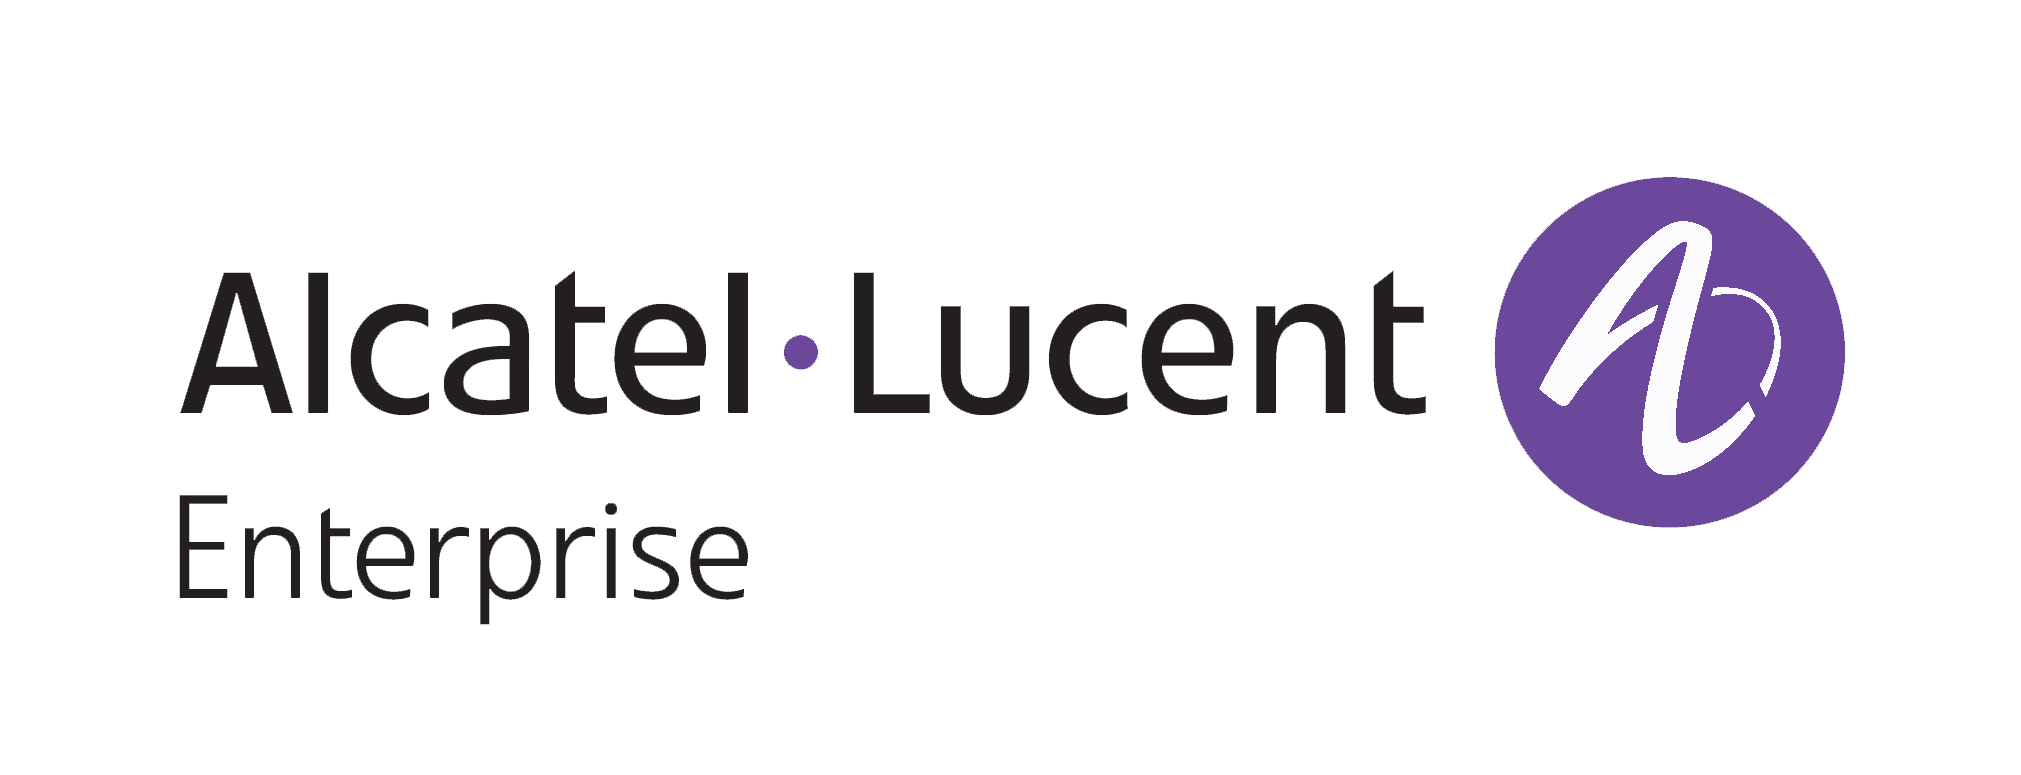 Alcatel-Lucent Logo - alcatel-lucent-enterprise-logo - ICT Value-Added Distributor (VAD)